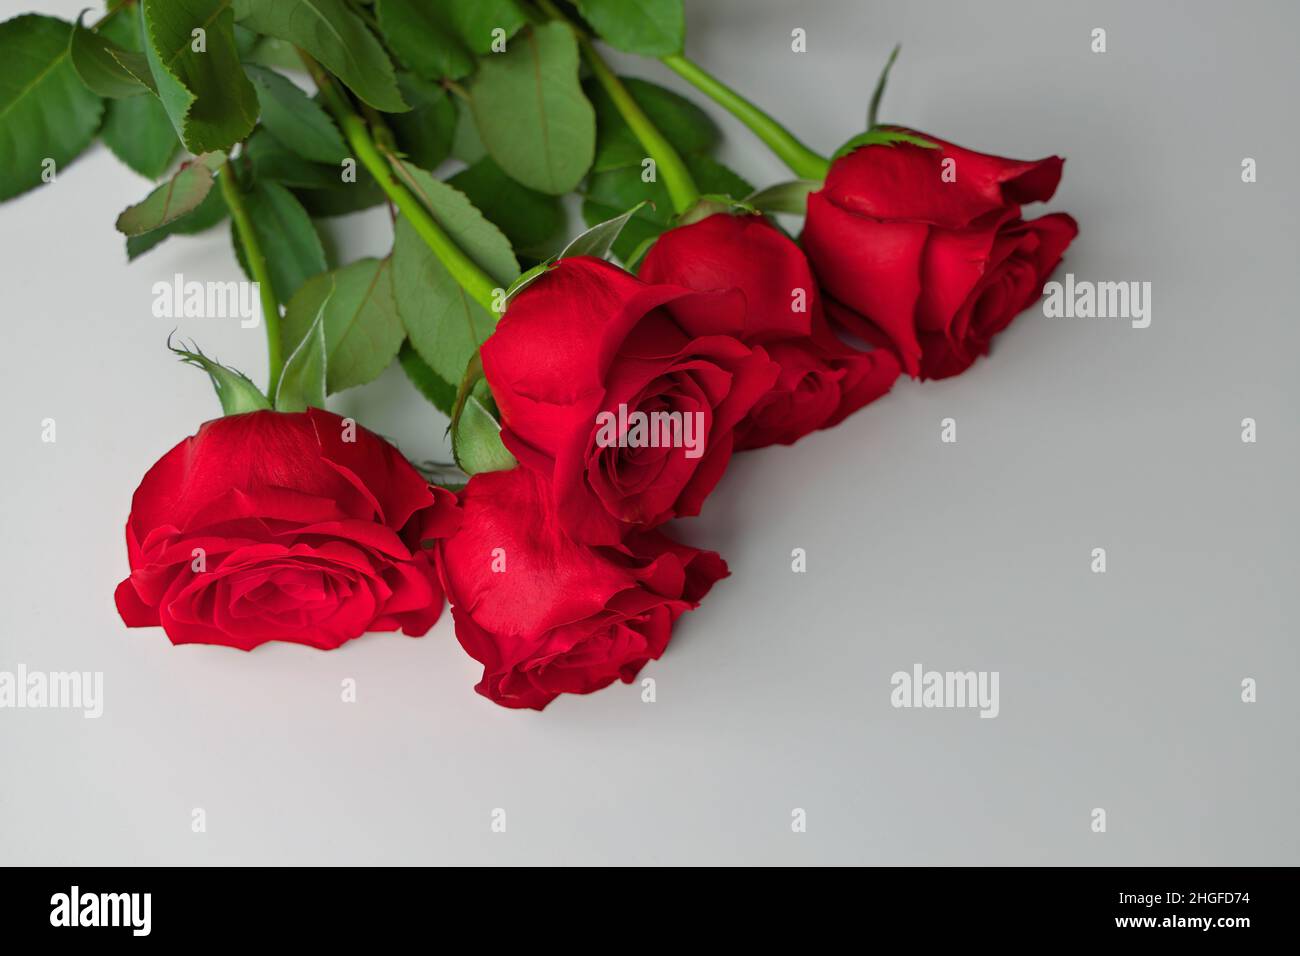 Niedrige Winkelansicht des roten Rosenstraußes auf einem grauen Hintergrund. Platz rechts unten kopieren. Stockfoto